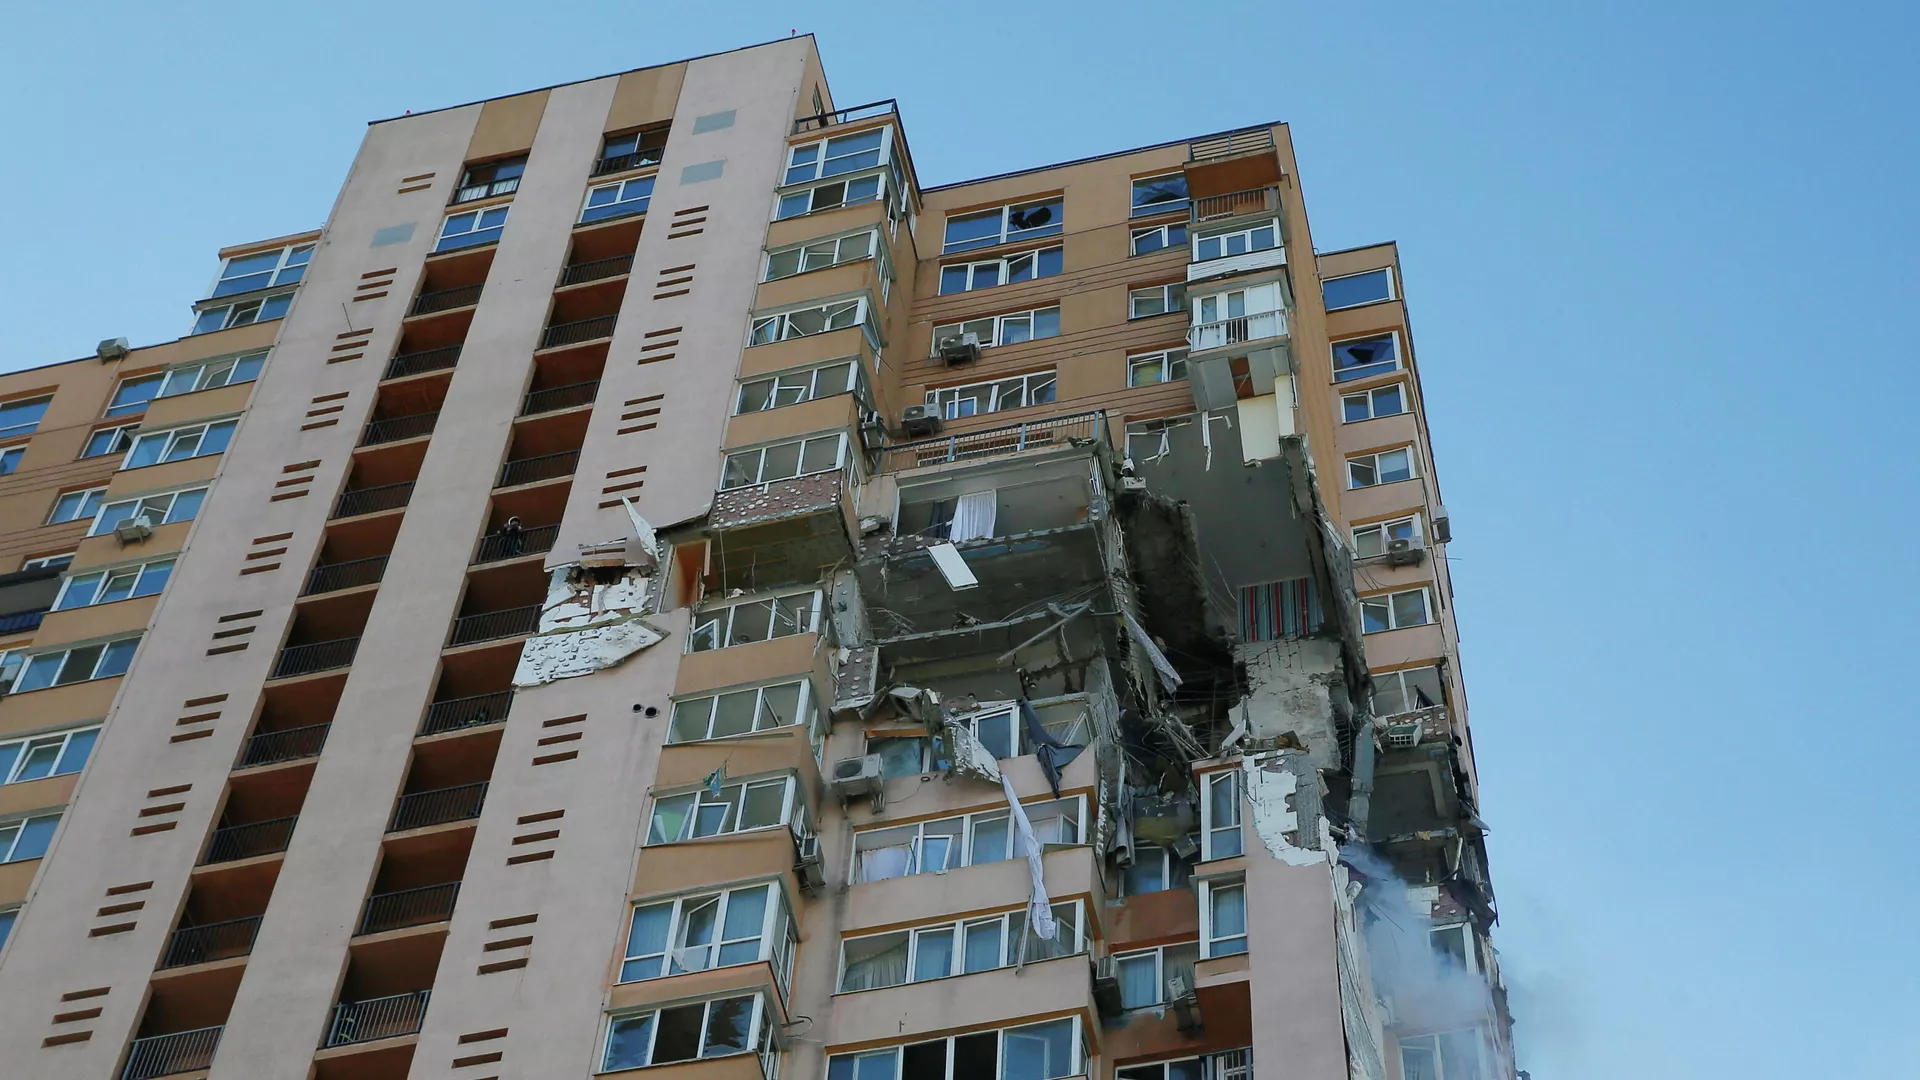 Жилой дом в Киеве, в который попала ракета украинского зенитного ракетного комплекса - РИА Новости, 1920, 26.02.2022